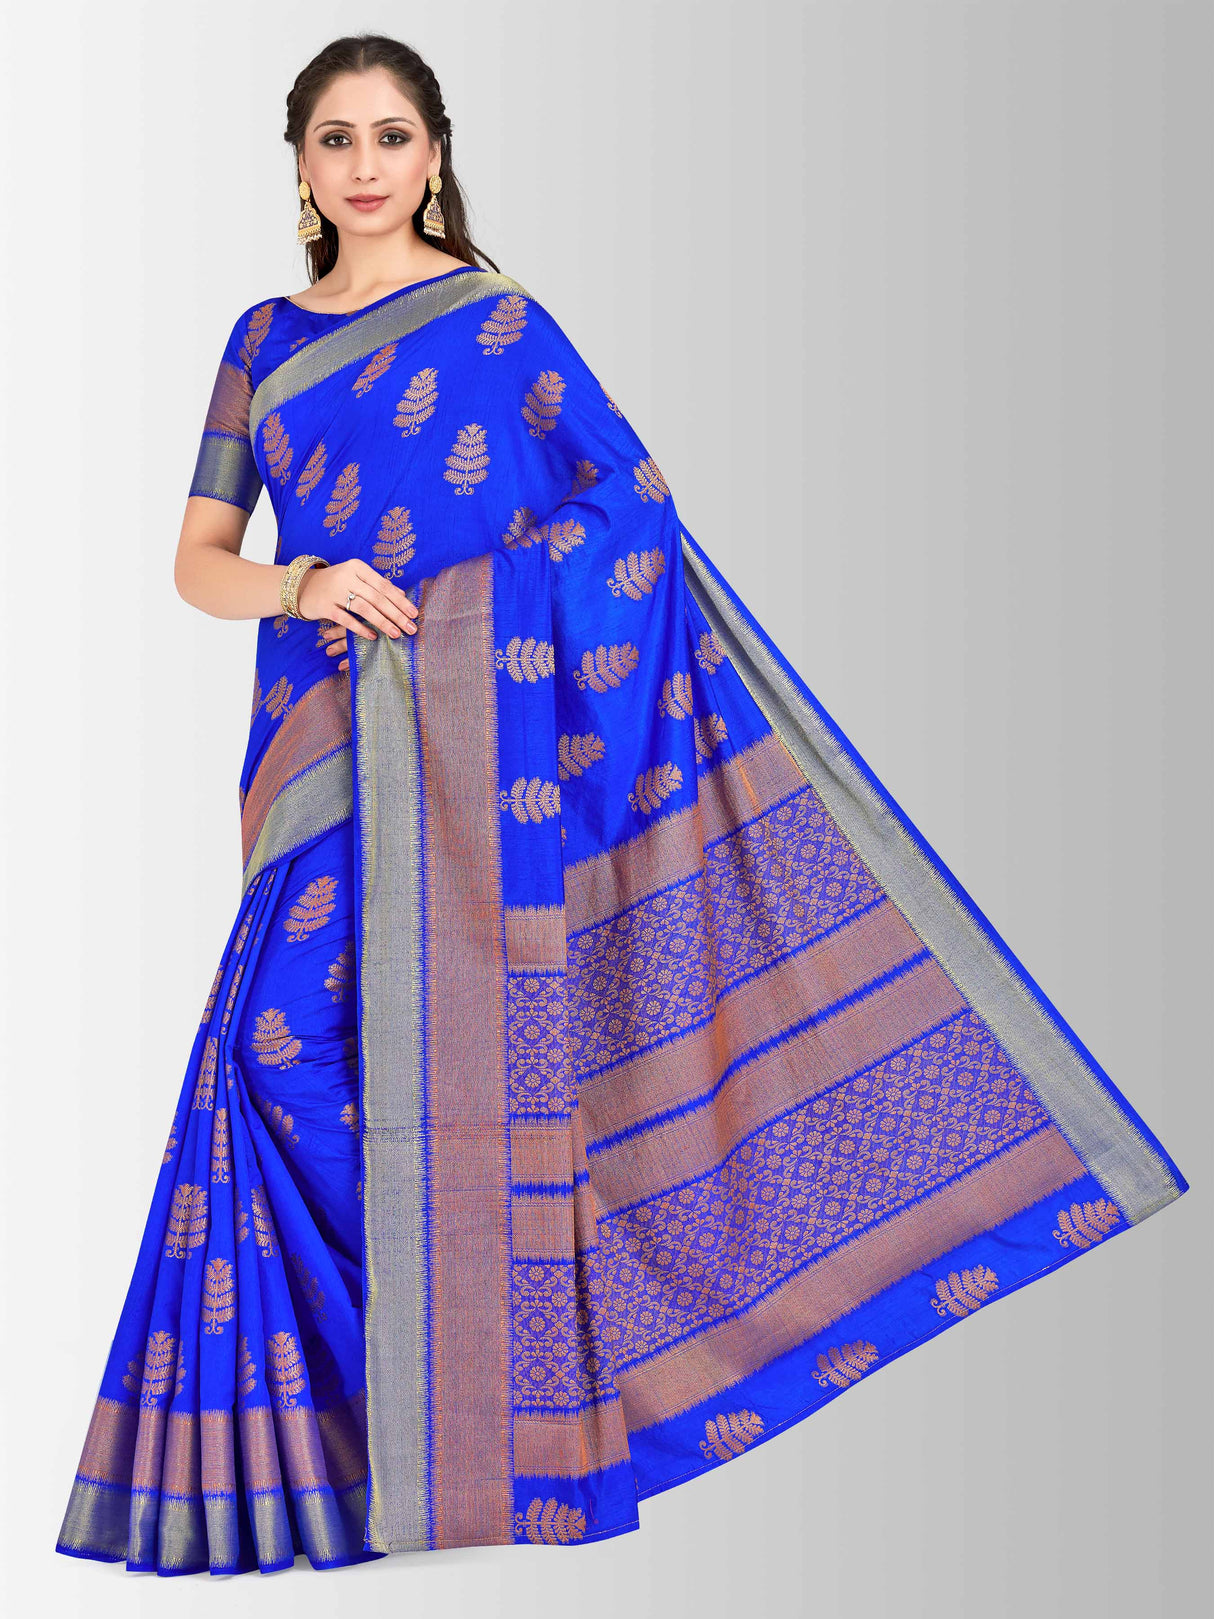 Mimosa Womens Tussar Silk Saree Banarasi style Royal Blue Color